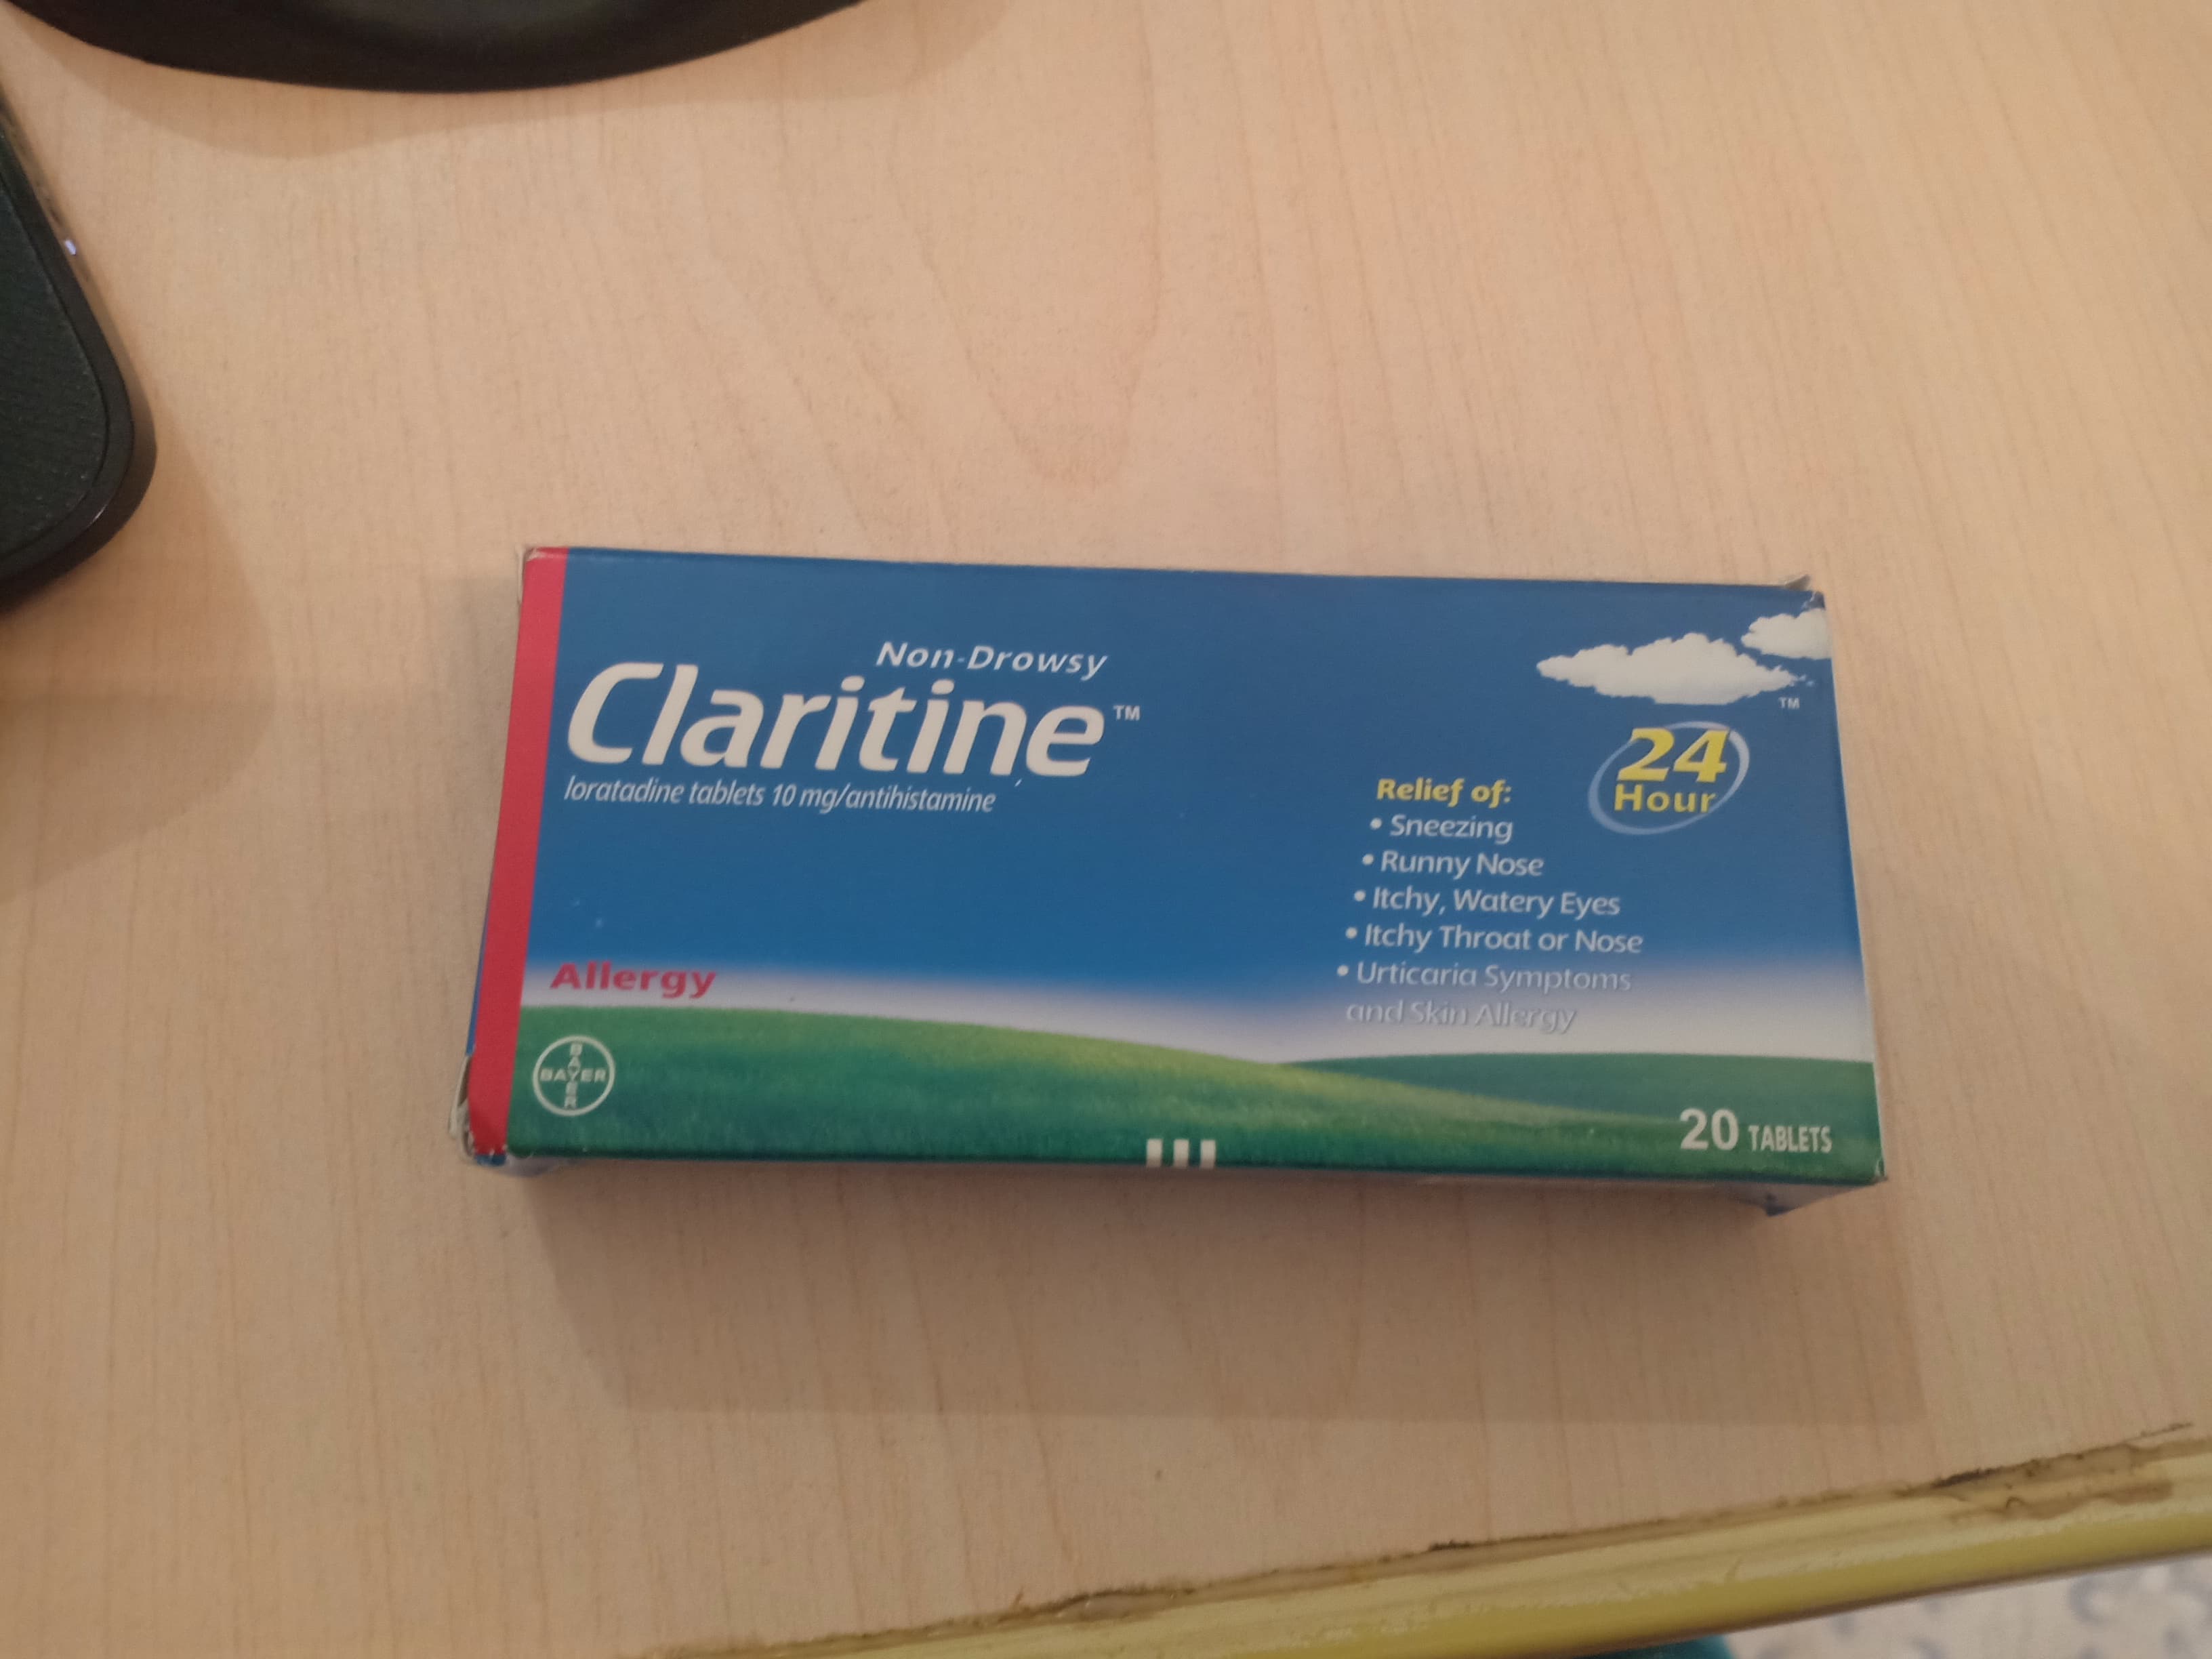 دواء كلاريتين Claritine